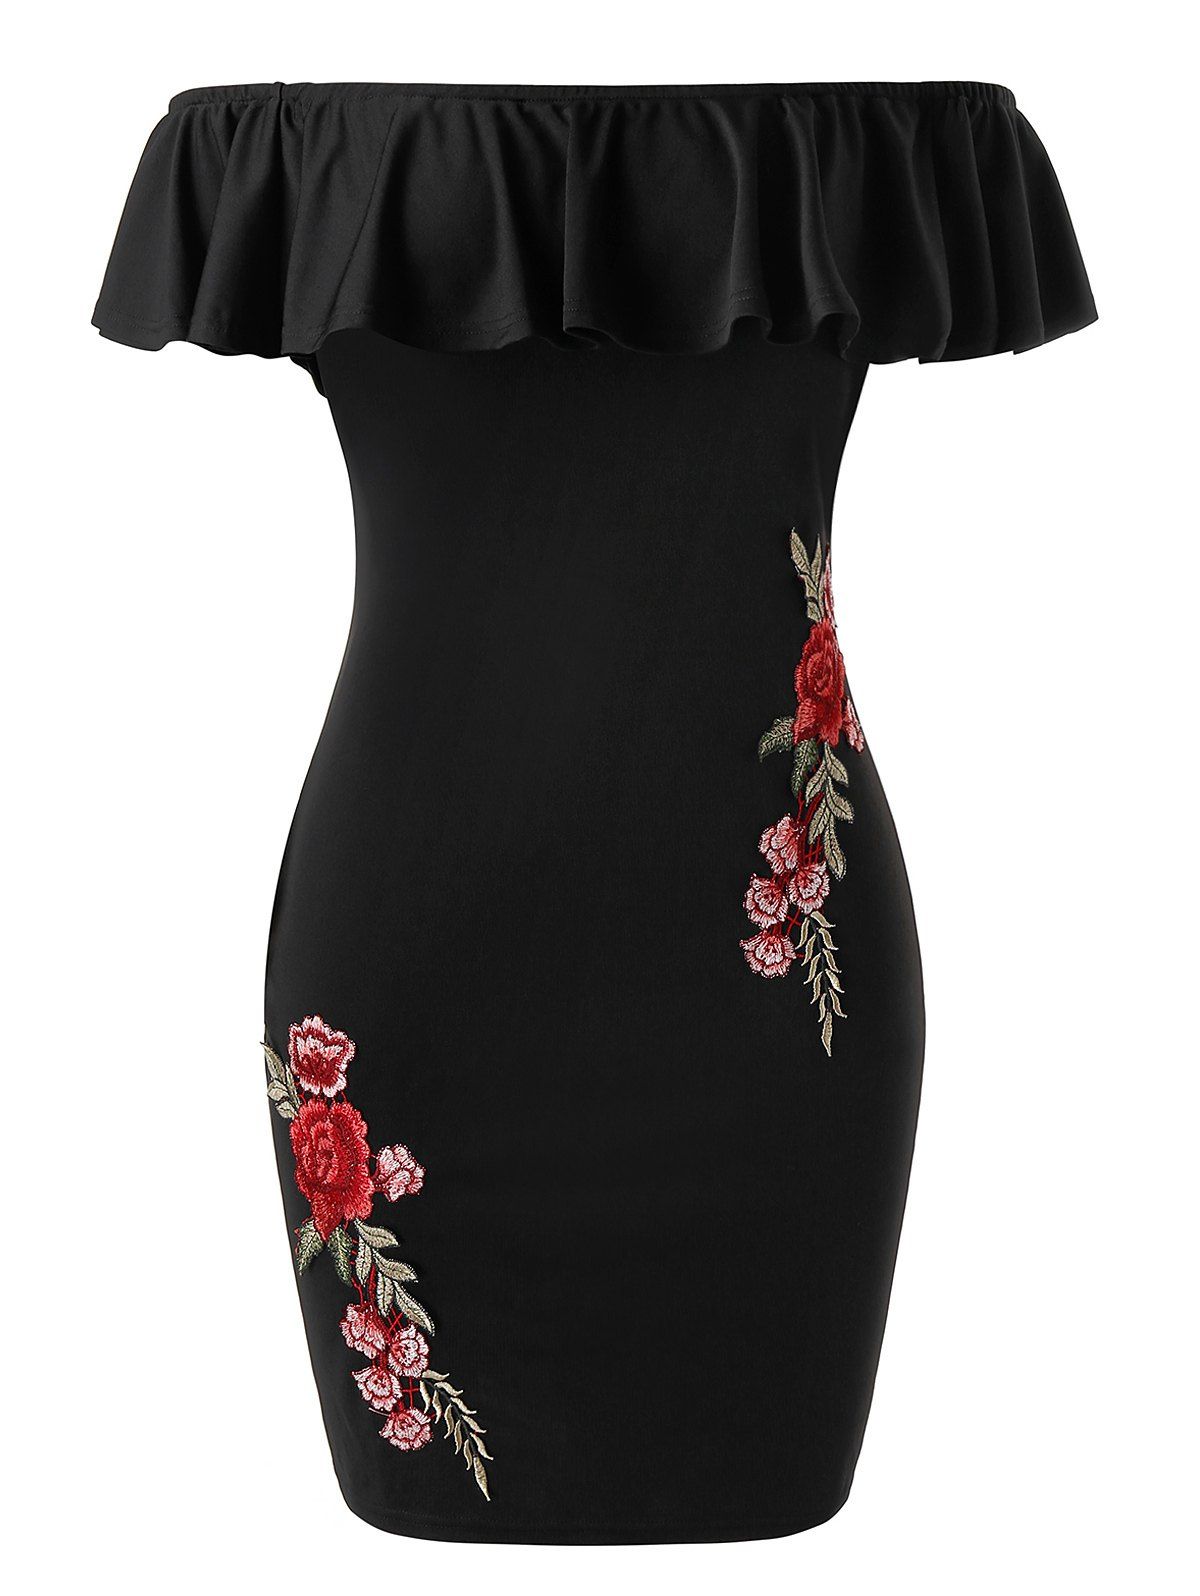 Plus Size Floral Ruffle Off The Shoulder Dress - BLACK L